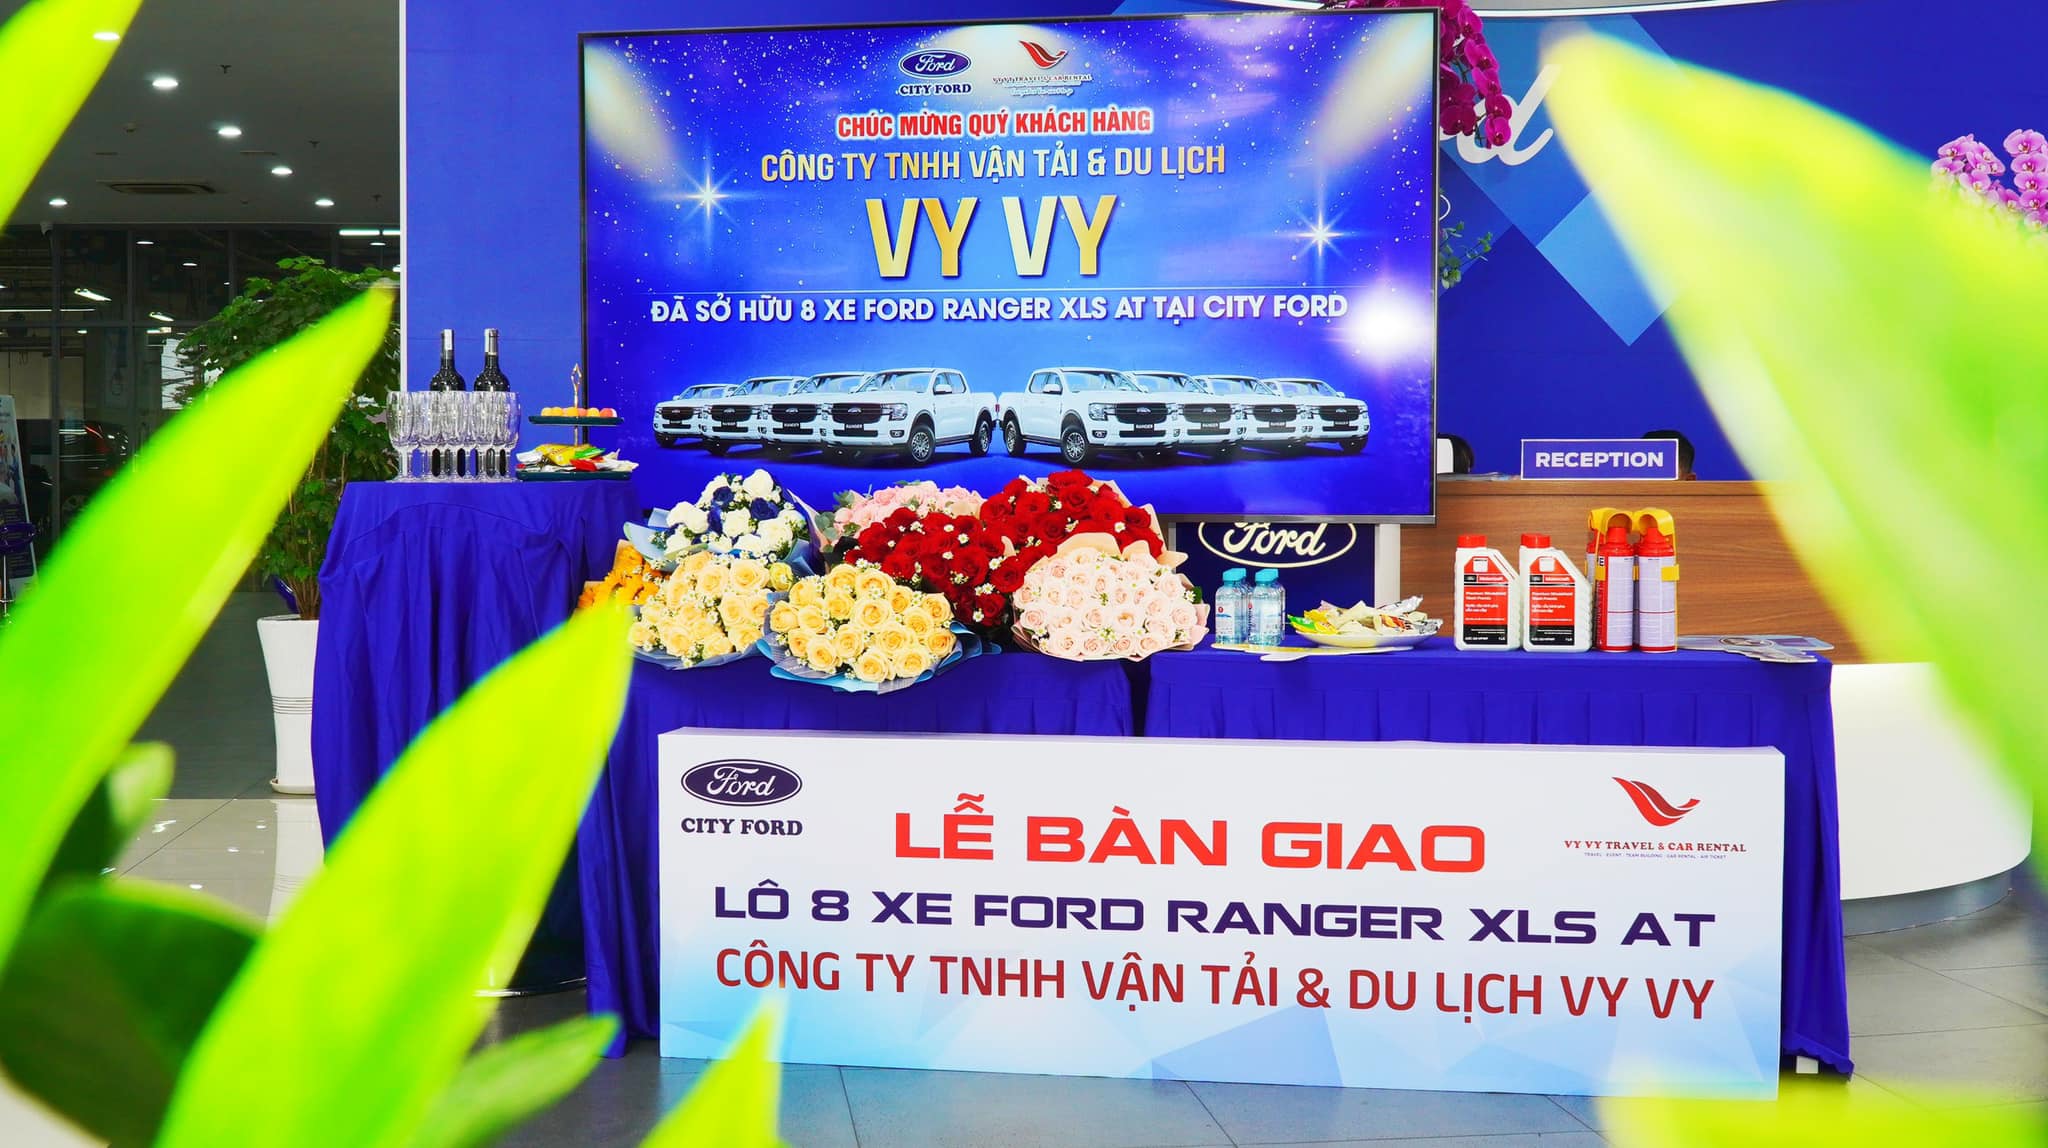 Công ty TNHH Vận Tải và Du Lịch Vy Vy nhận lô 8 xe Ford Ranger XLS